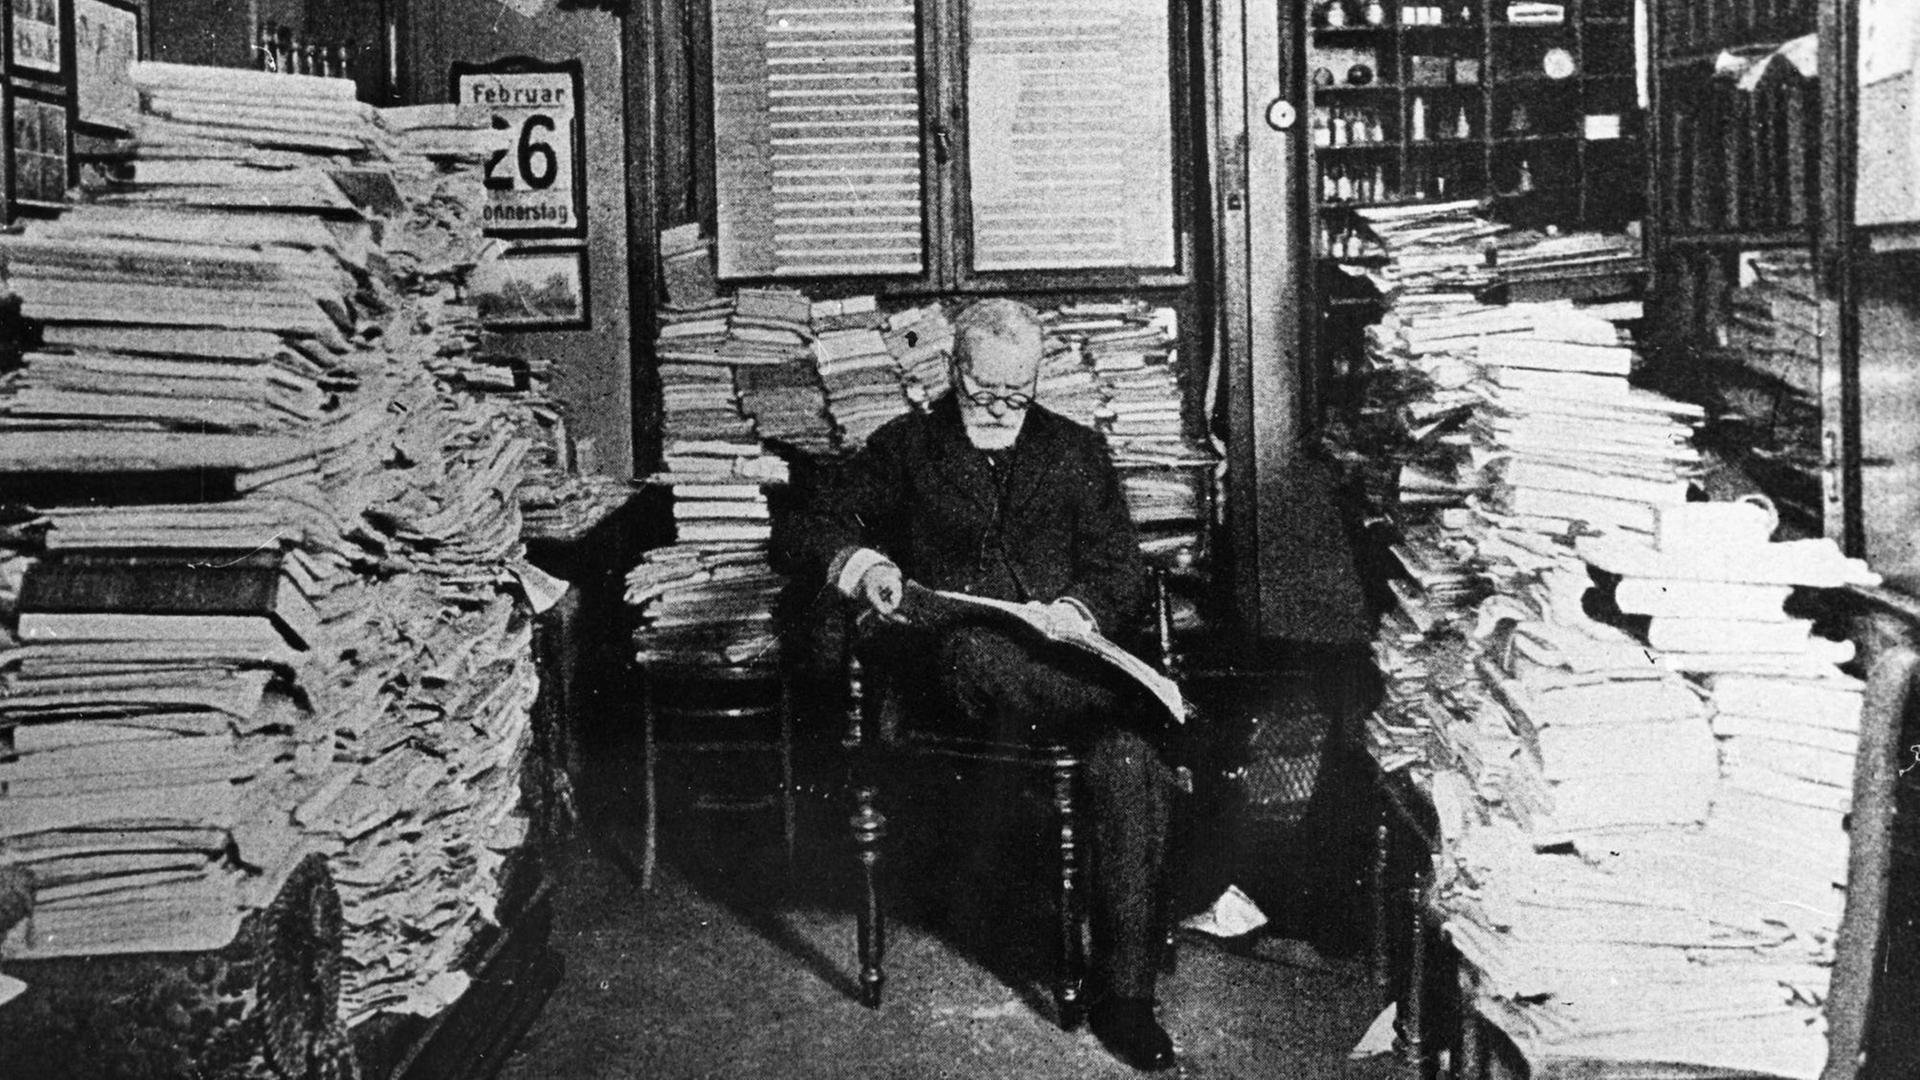 Der deutsche Arzt und Forscher Paul Ehrlich sitzt zwischen riesigen Stapeln Papier.